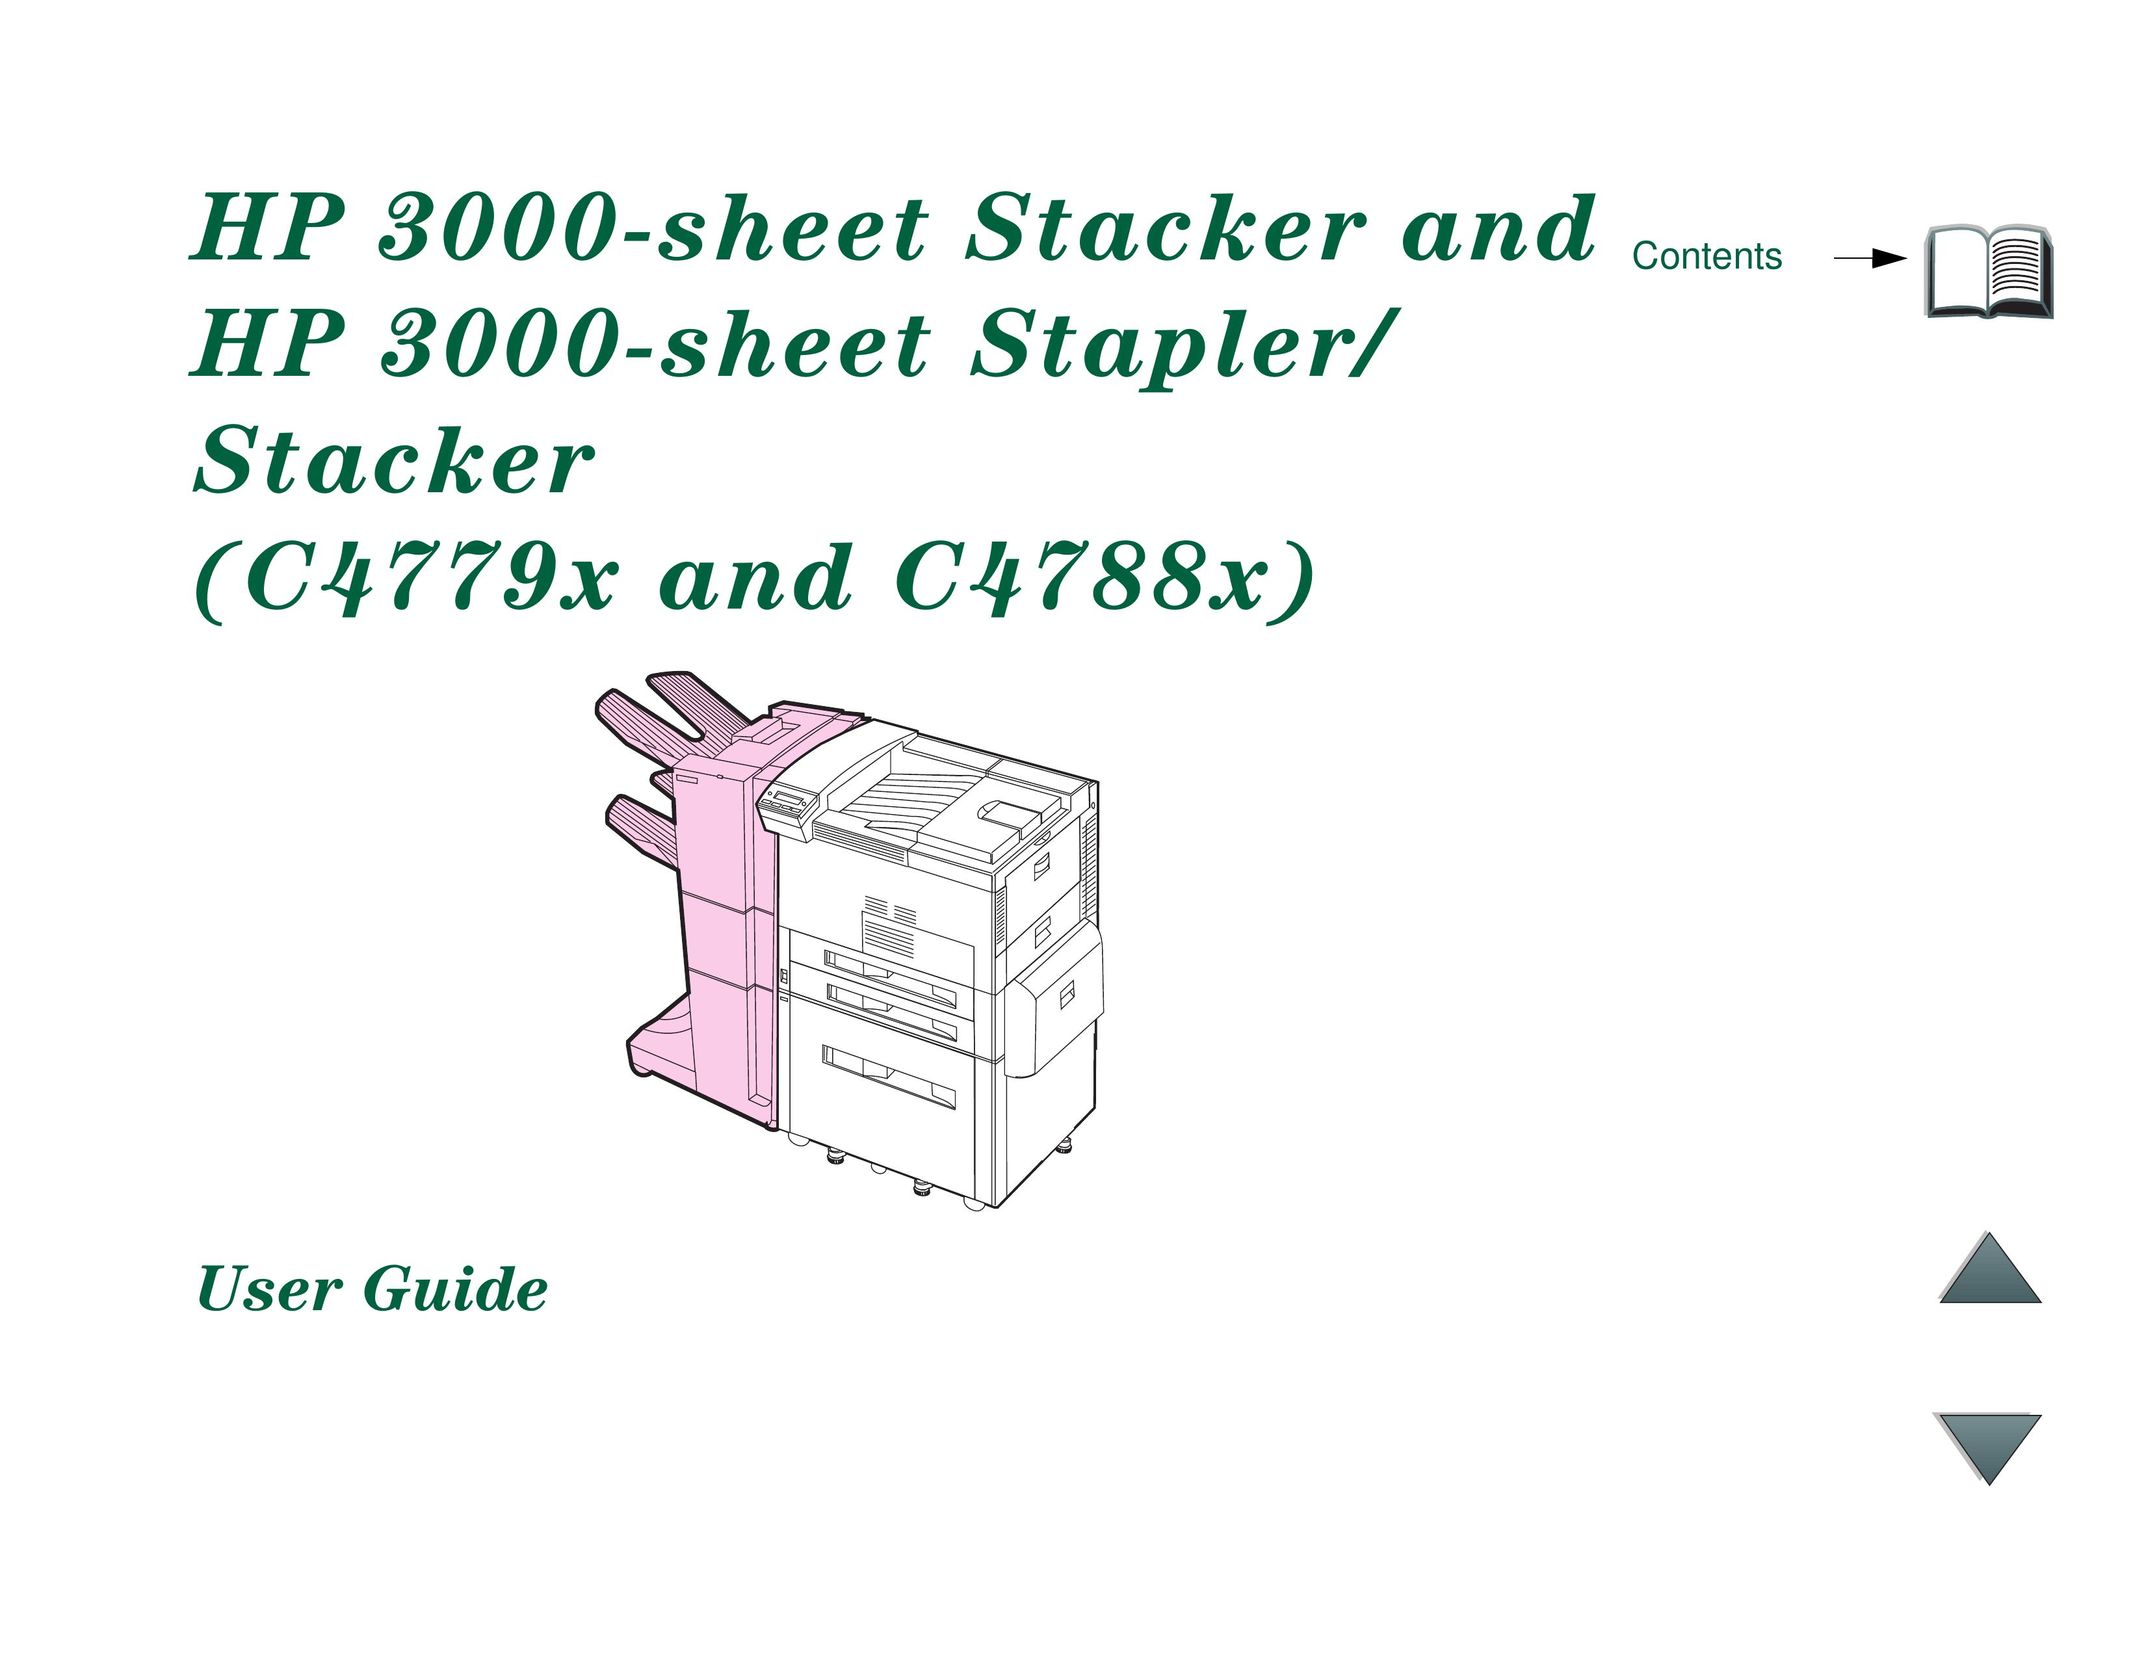 HP (Hewlett-Packard) C4788x Staple Gun User Manual